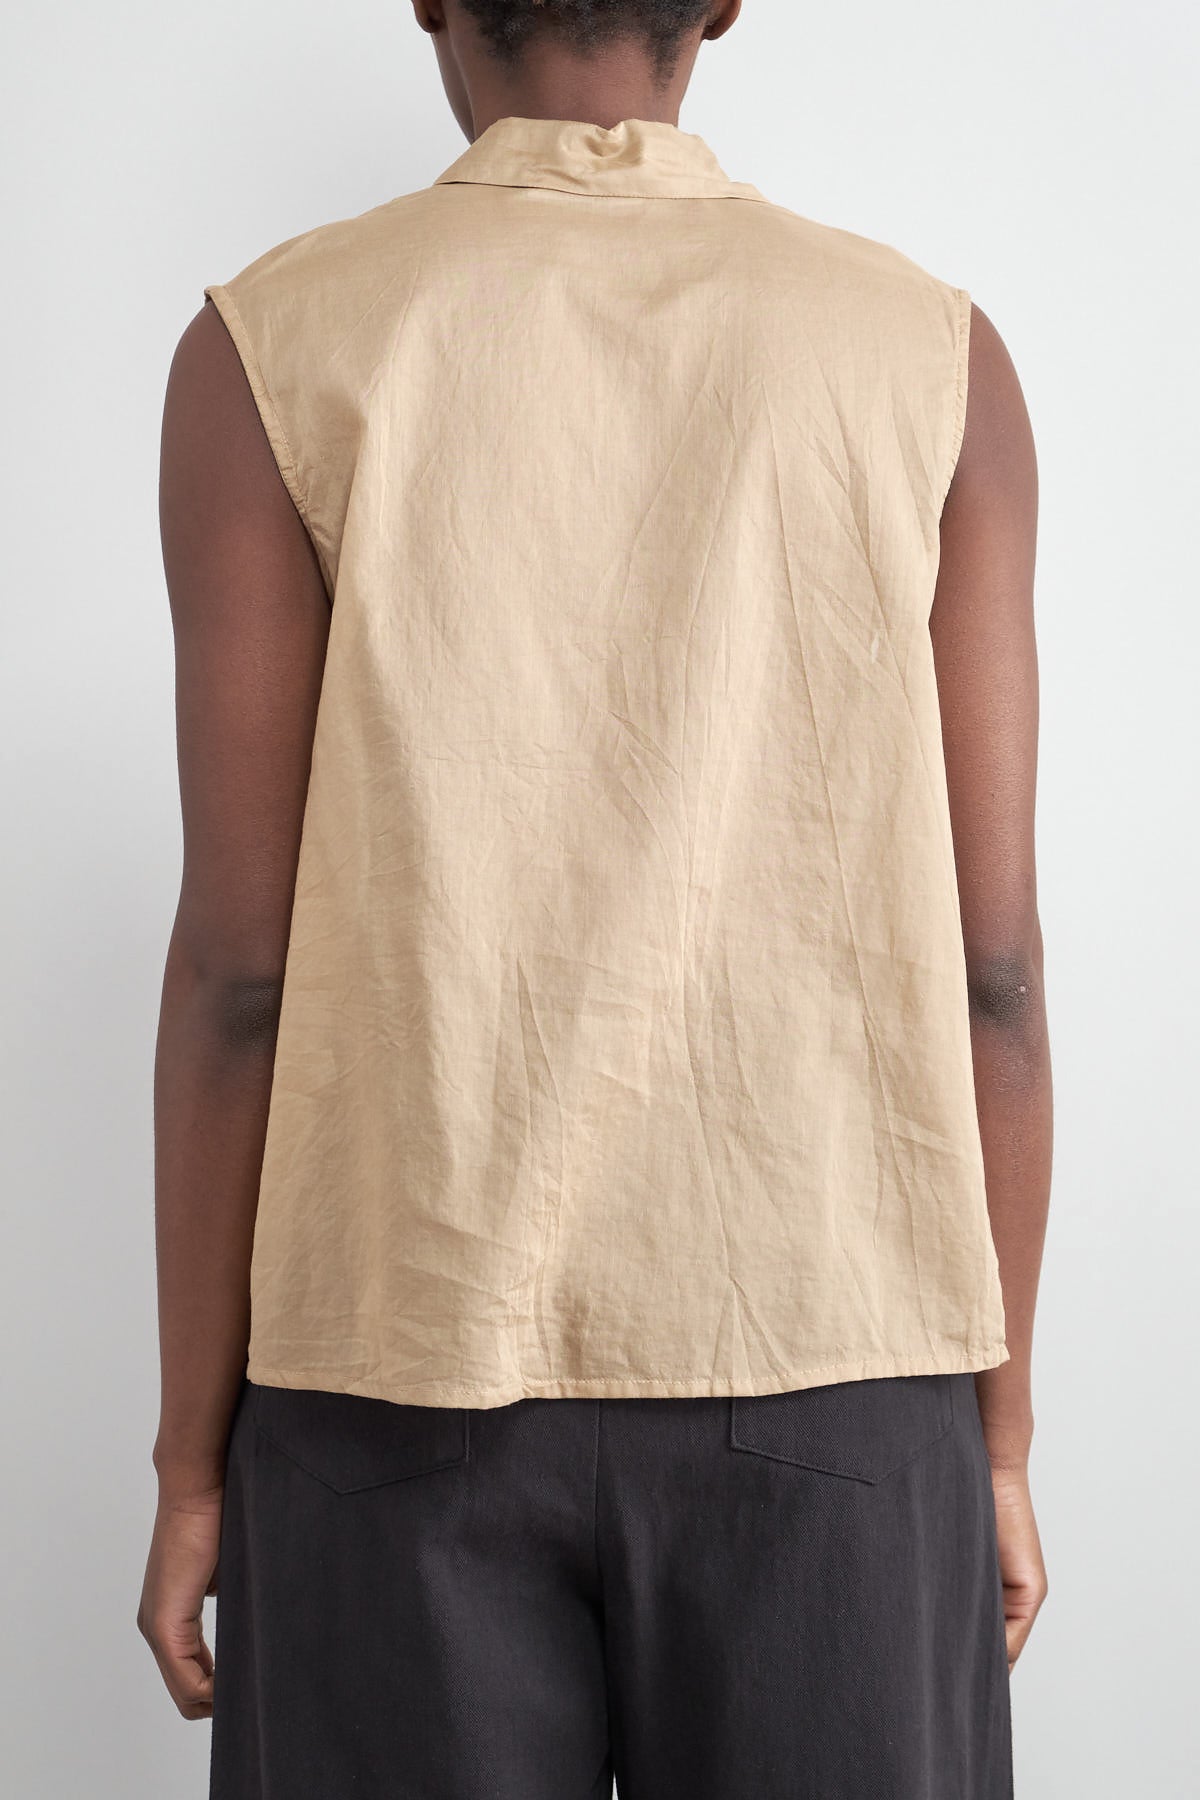 Back of Idée Shirt in Camel